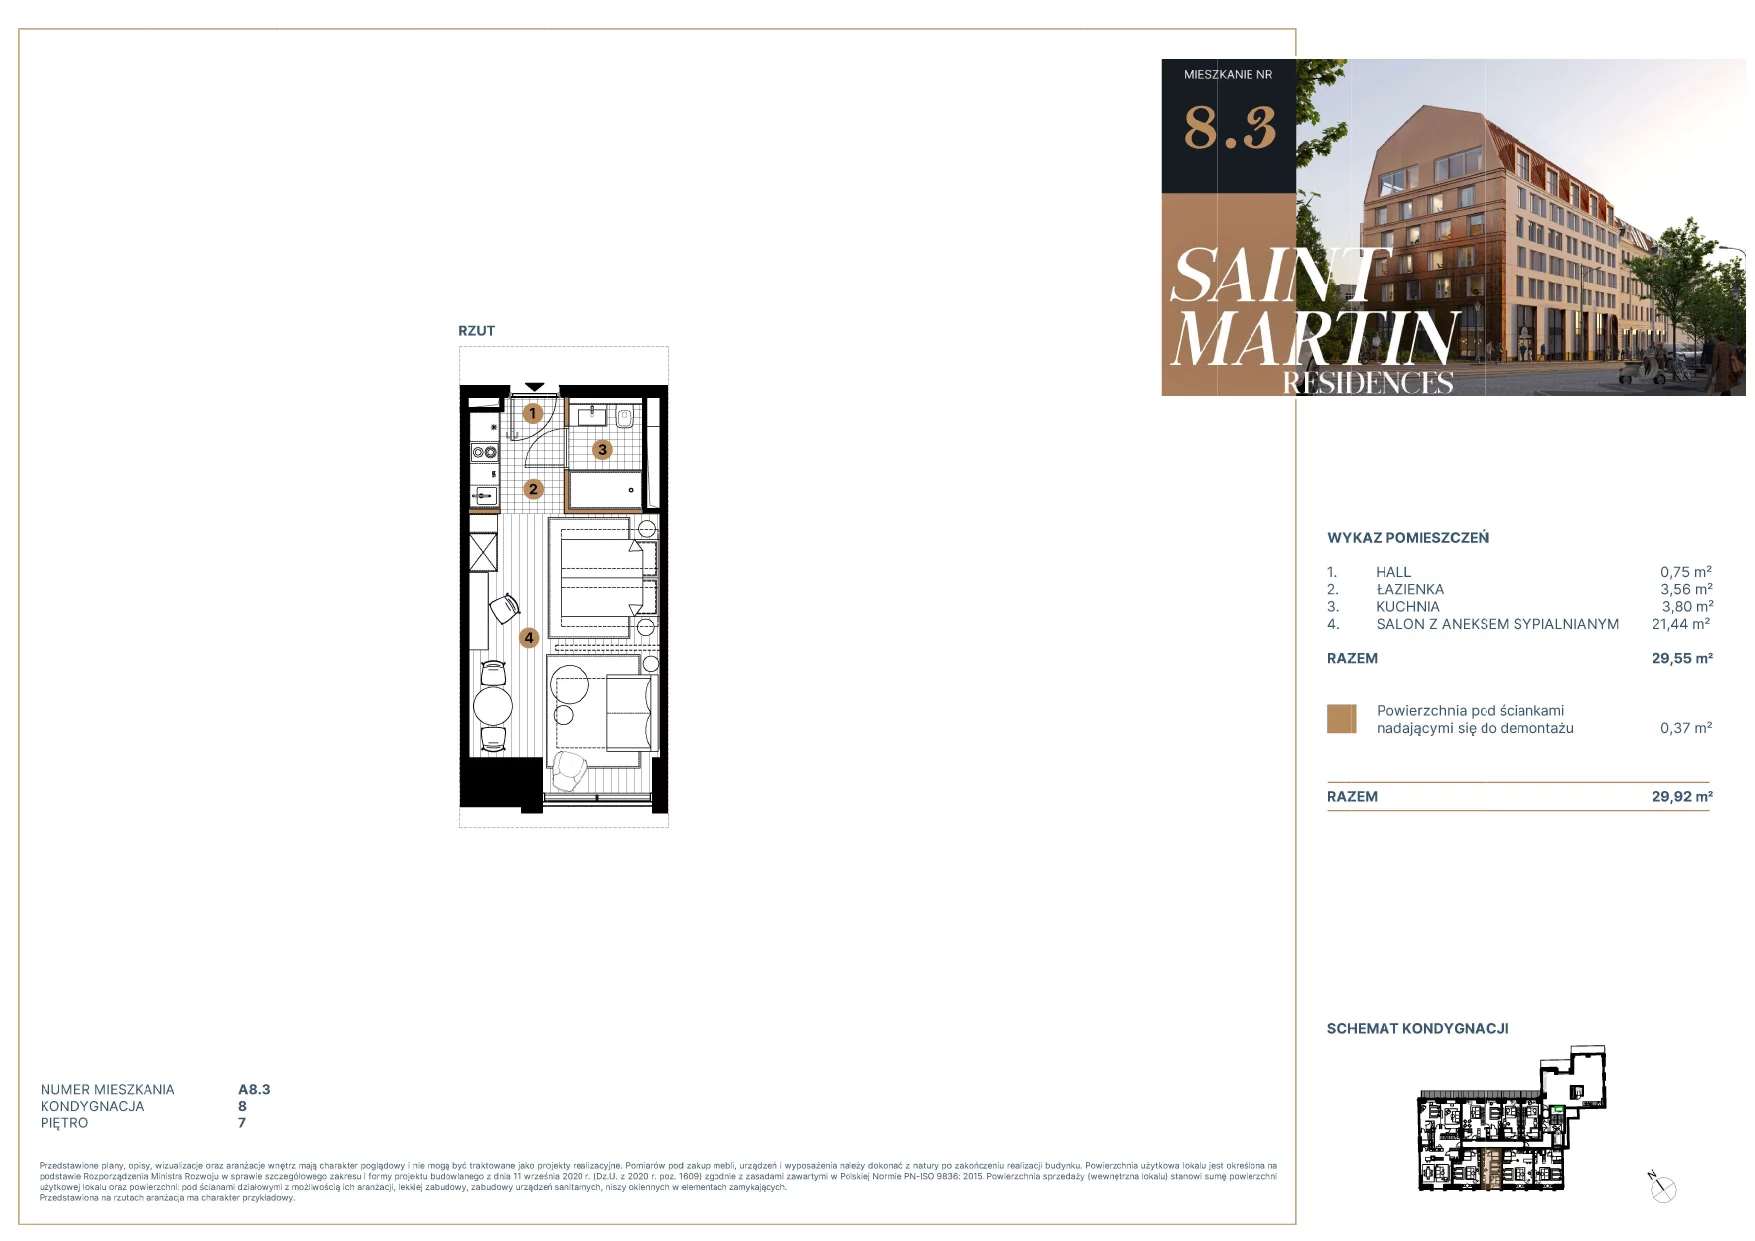 Mieszkanie 29,83 m², piętro 7, oferta nr A8.3, Saint Martin Residences II, Poznań, Stare Miasto, Stare Miasto, ul. Podgórna 7